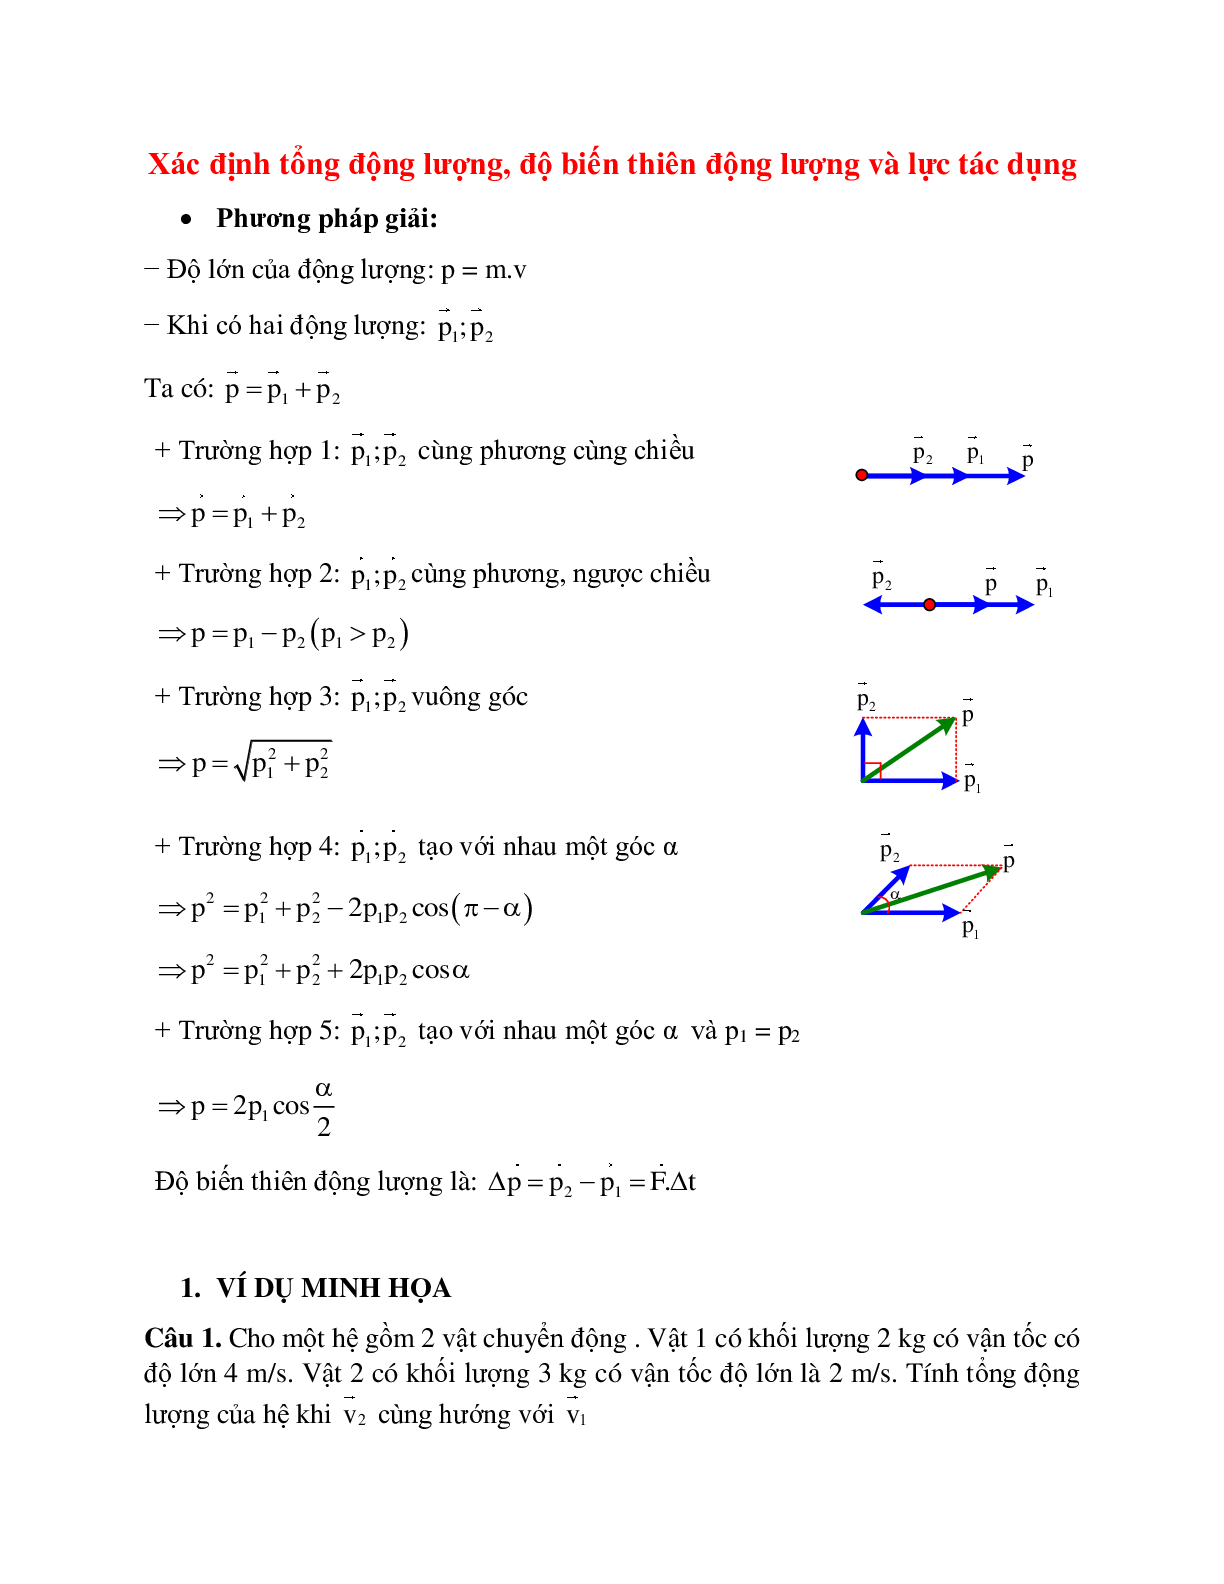 Phương pháp giải và bài tập về Xác định tổng động lượng, độ biến thiên động lượng và lực tác dụng (trang 1)